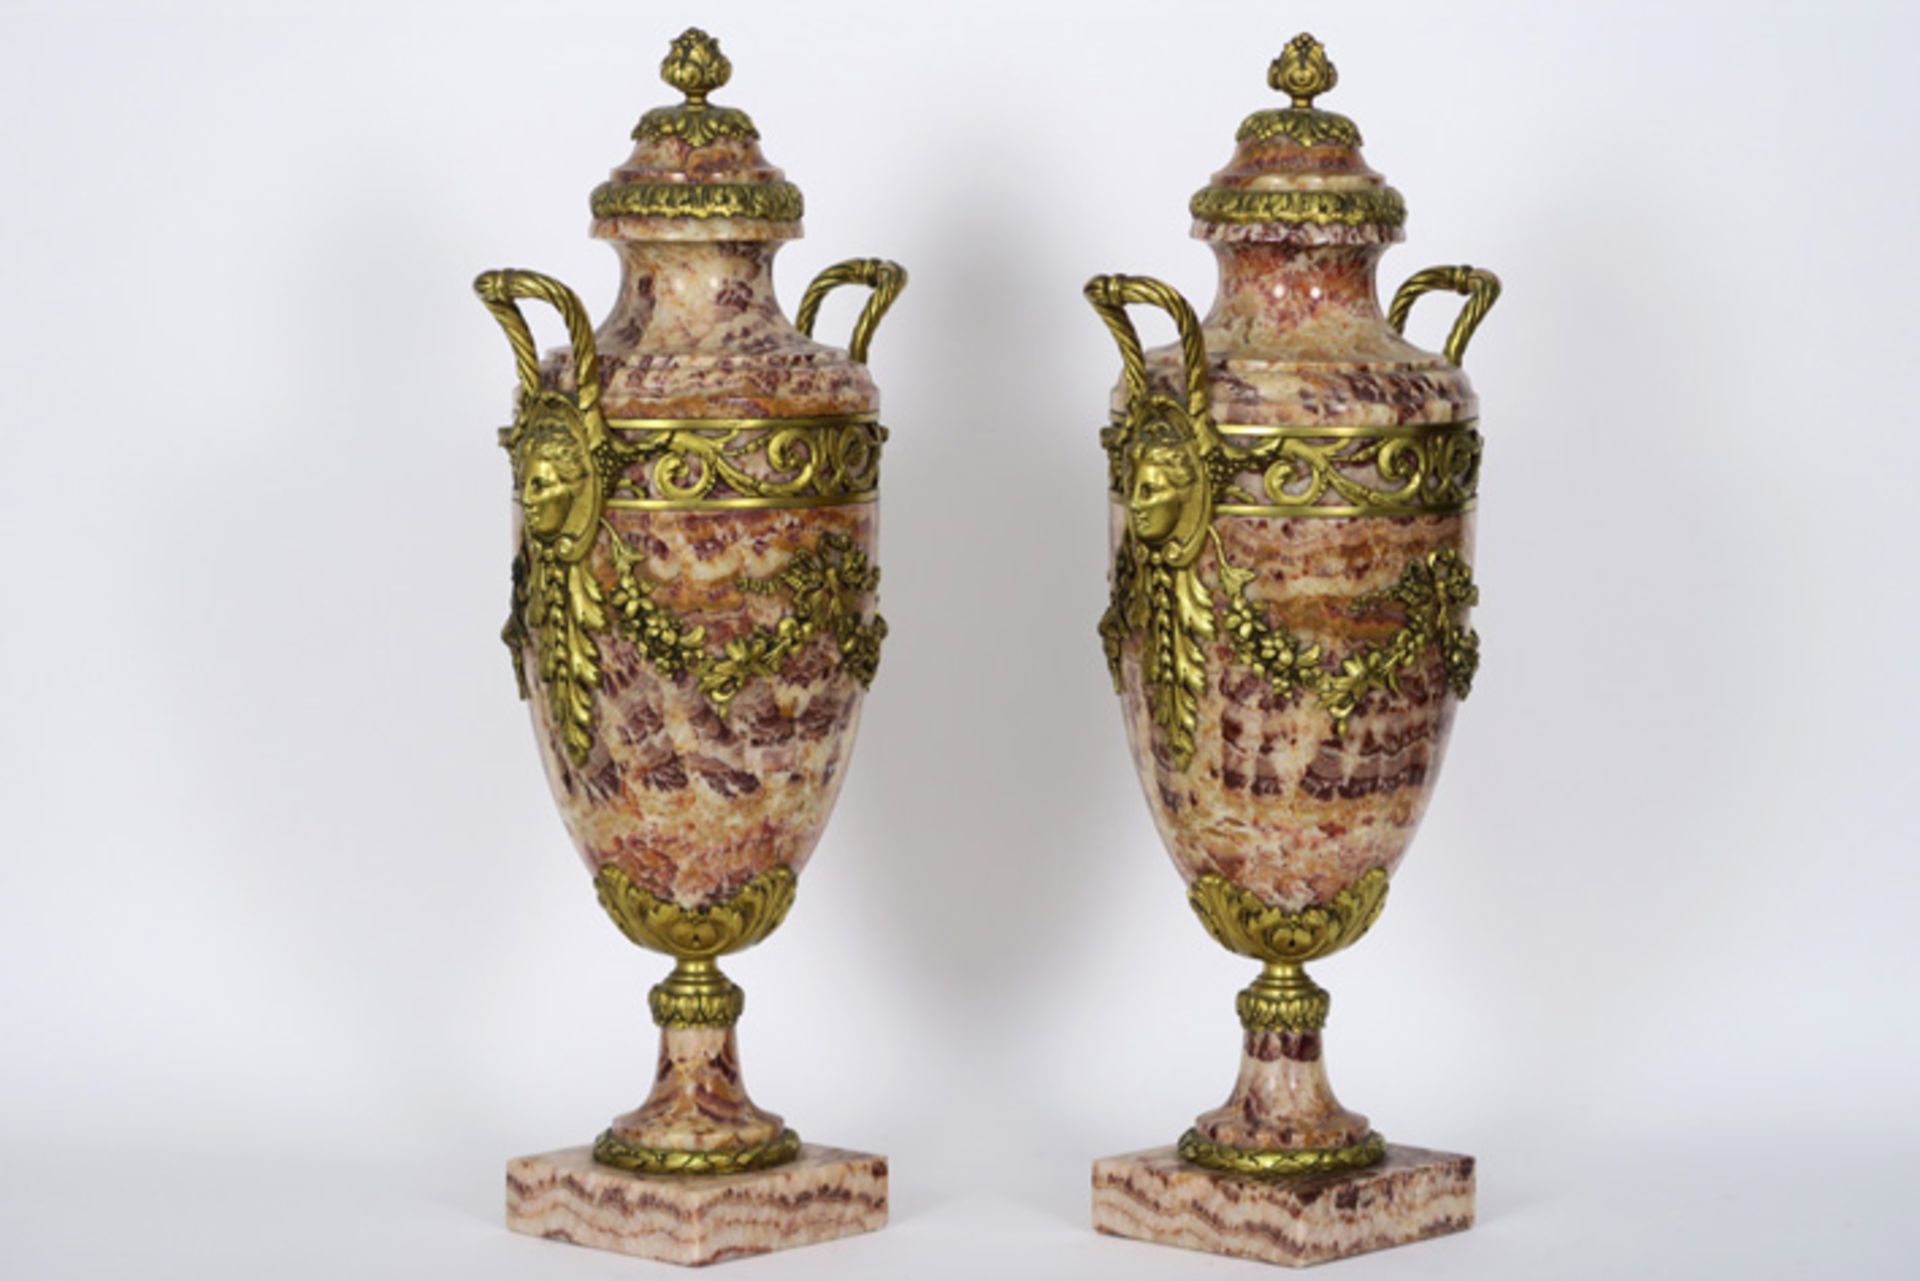 Paar vrij grote, antieke neoclassicistische cassoletvazen in marmer met een rijke [...] - Image 2 of 3